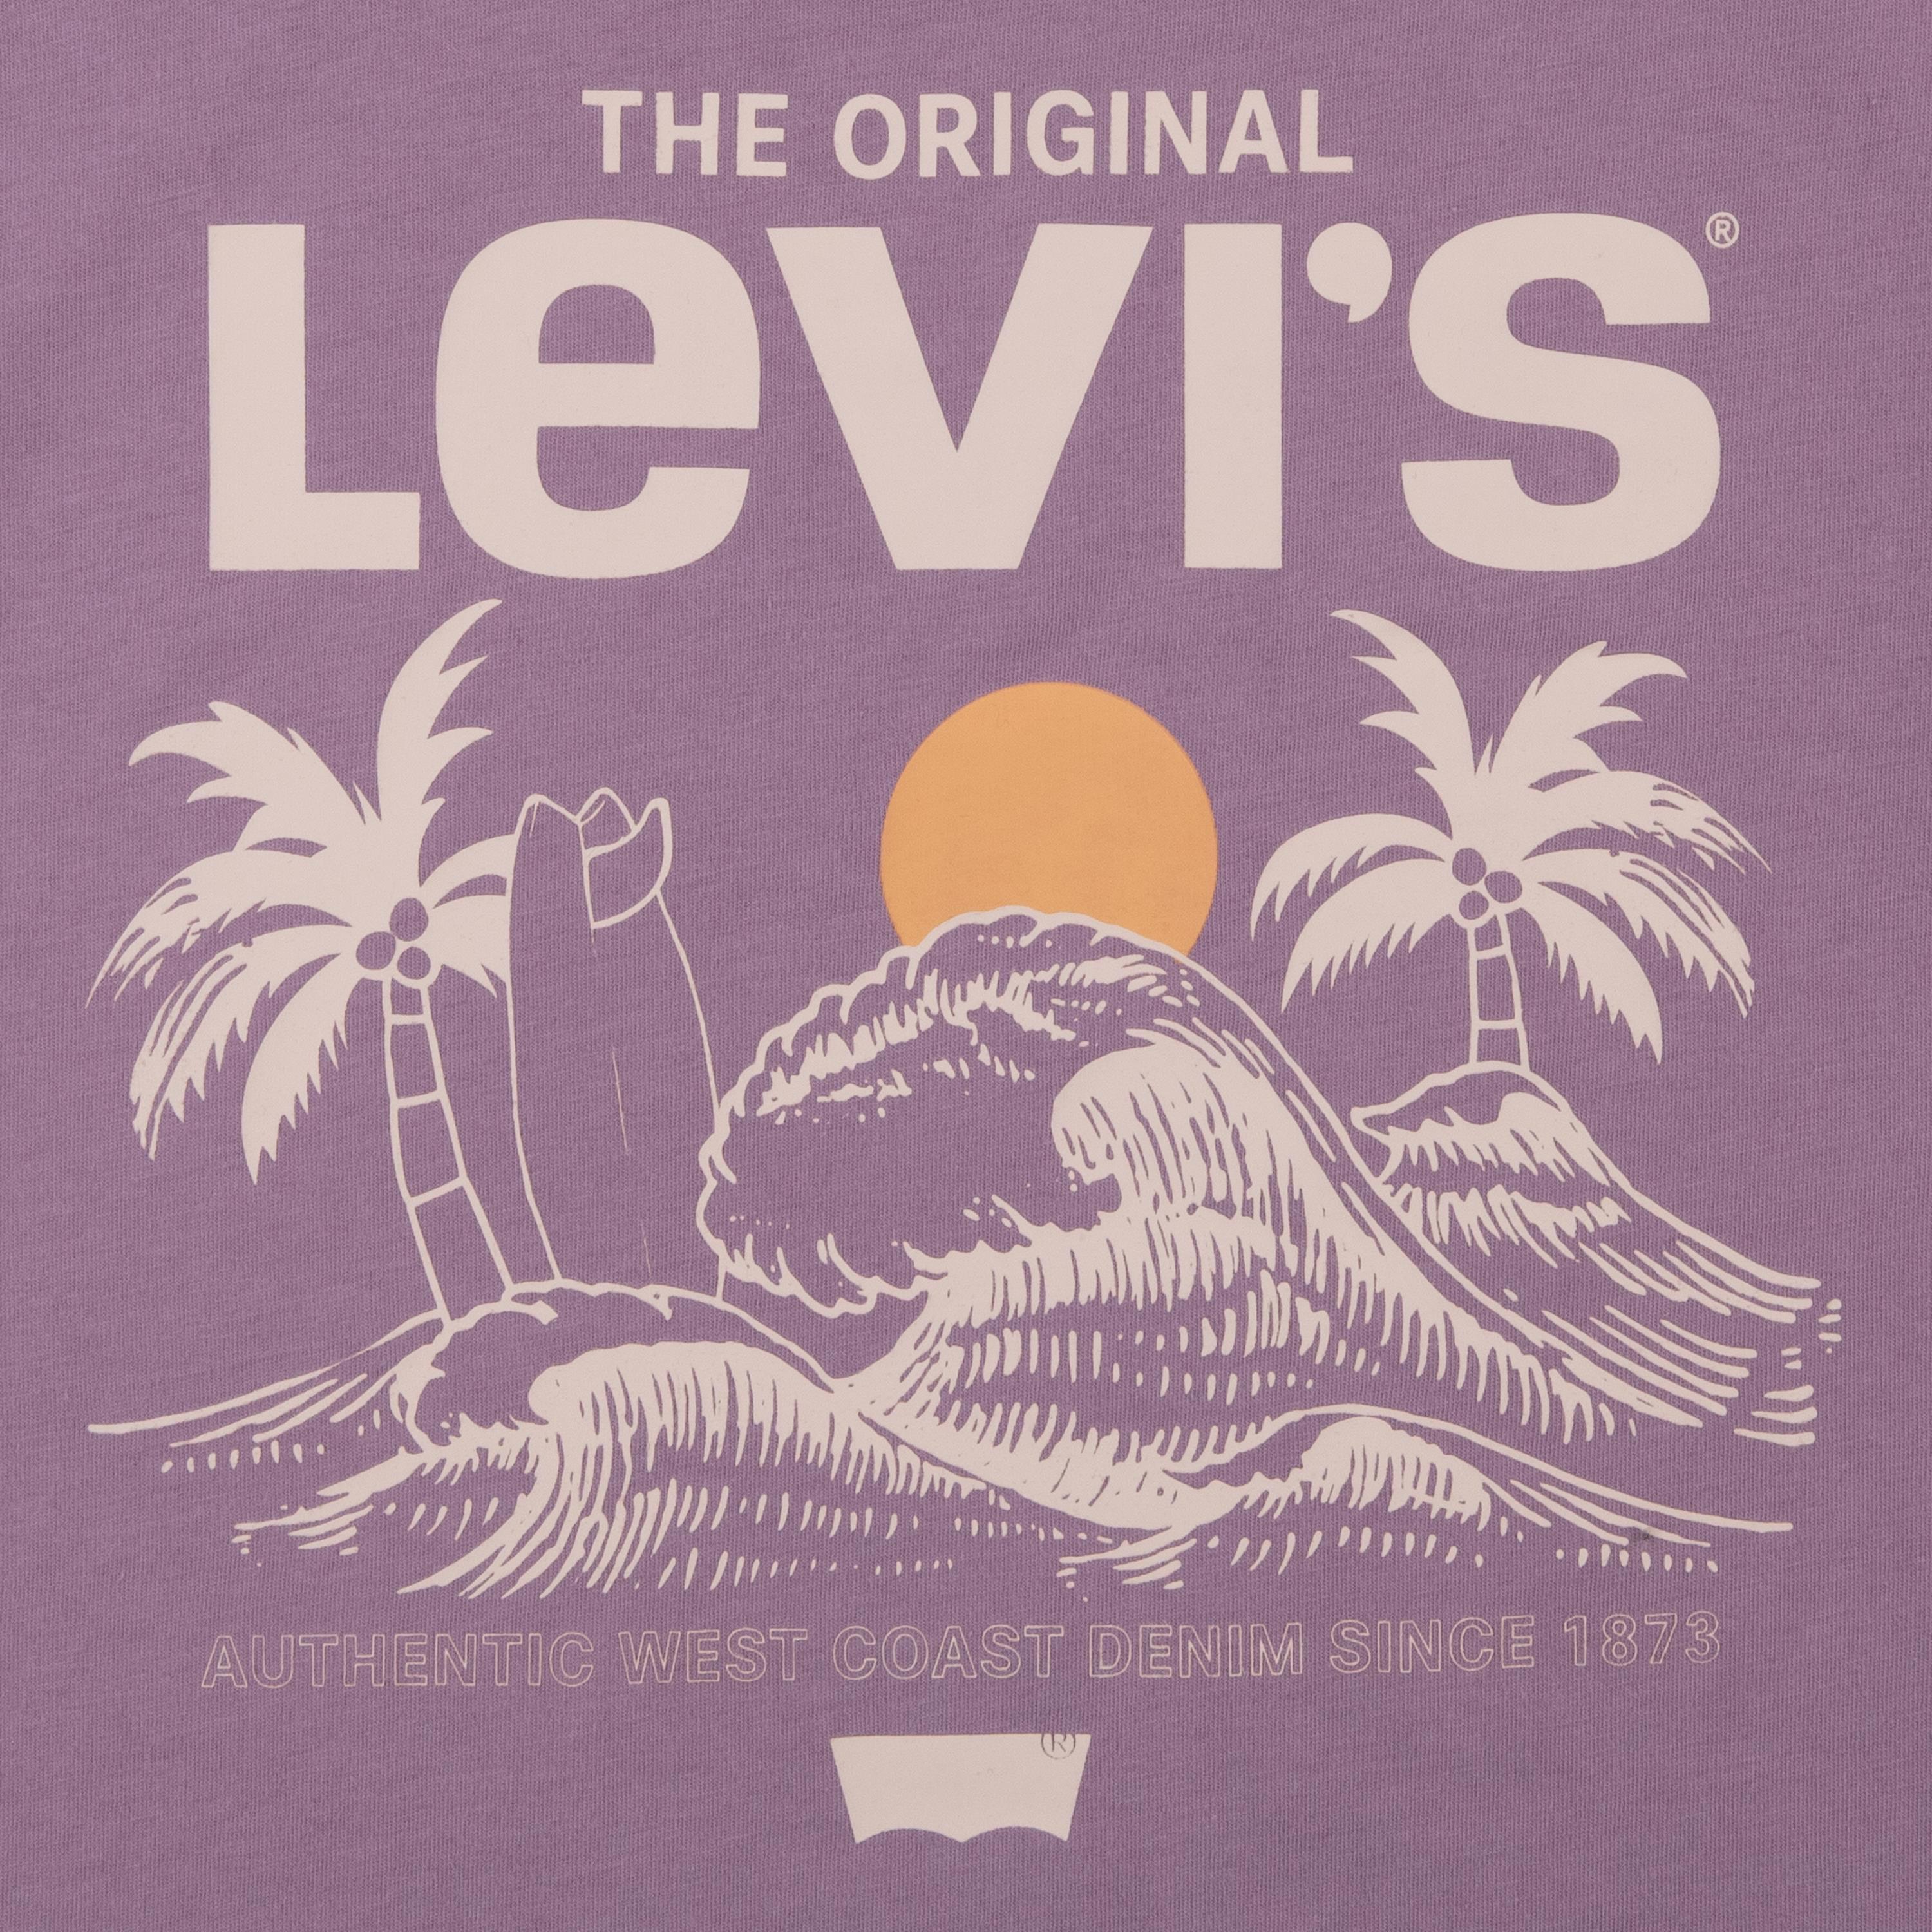 LEVIS BOY T-Shirt Coastline View